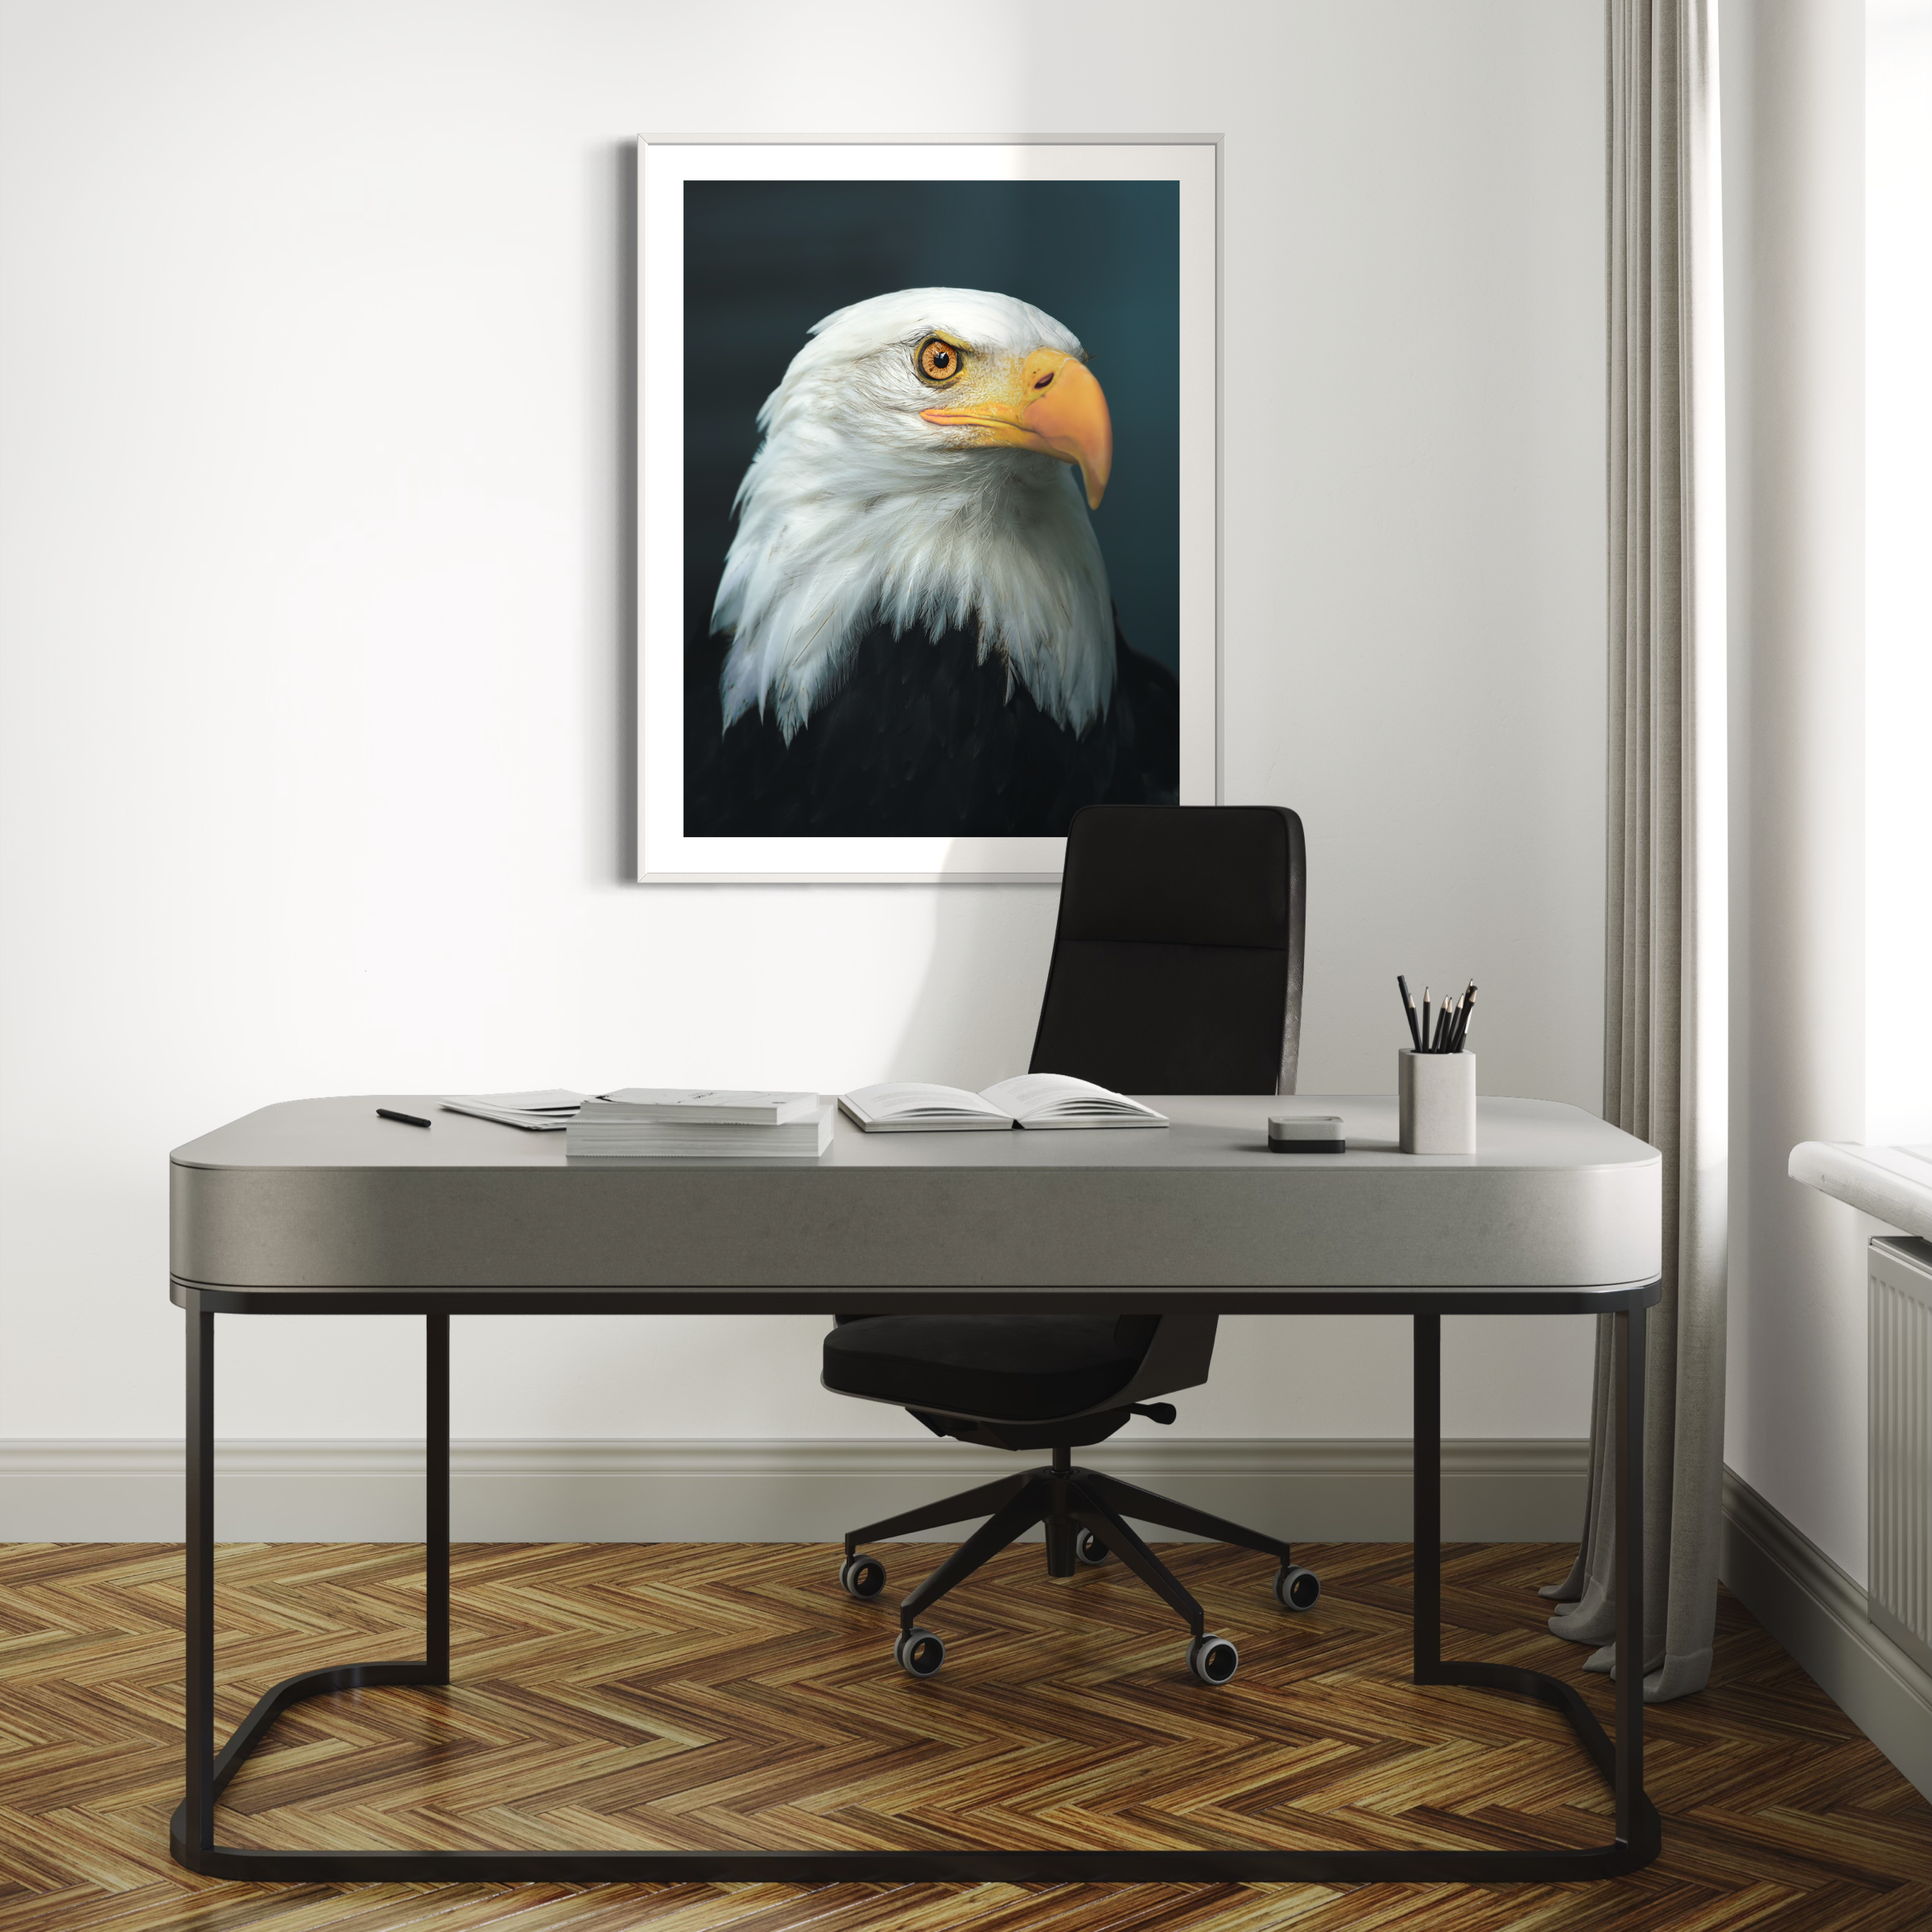 Bald Eagle Portrait Print